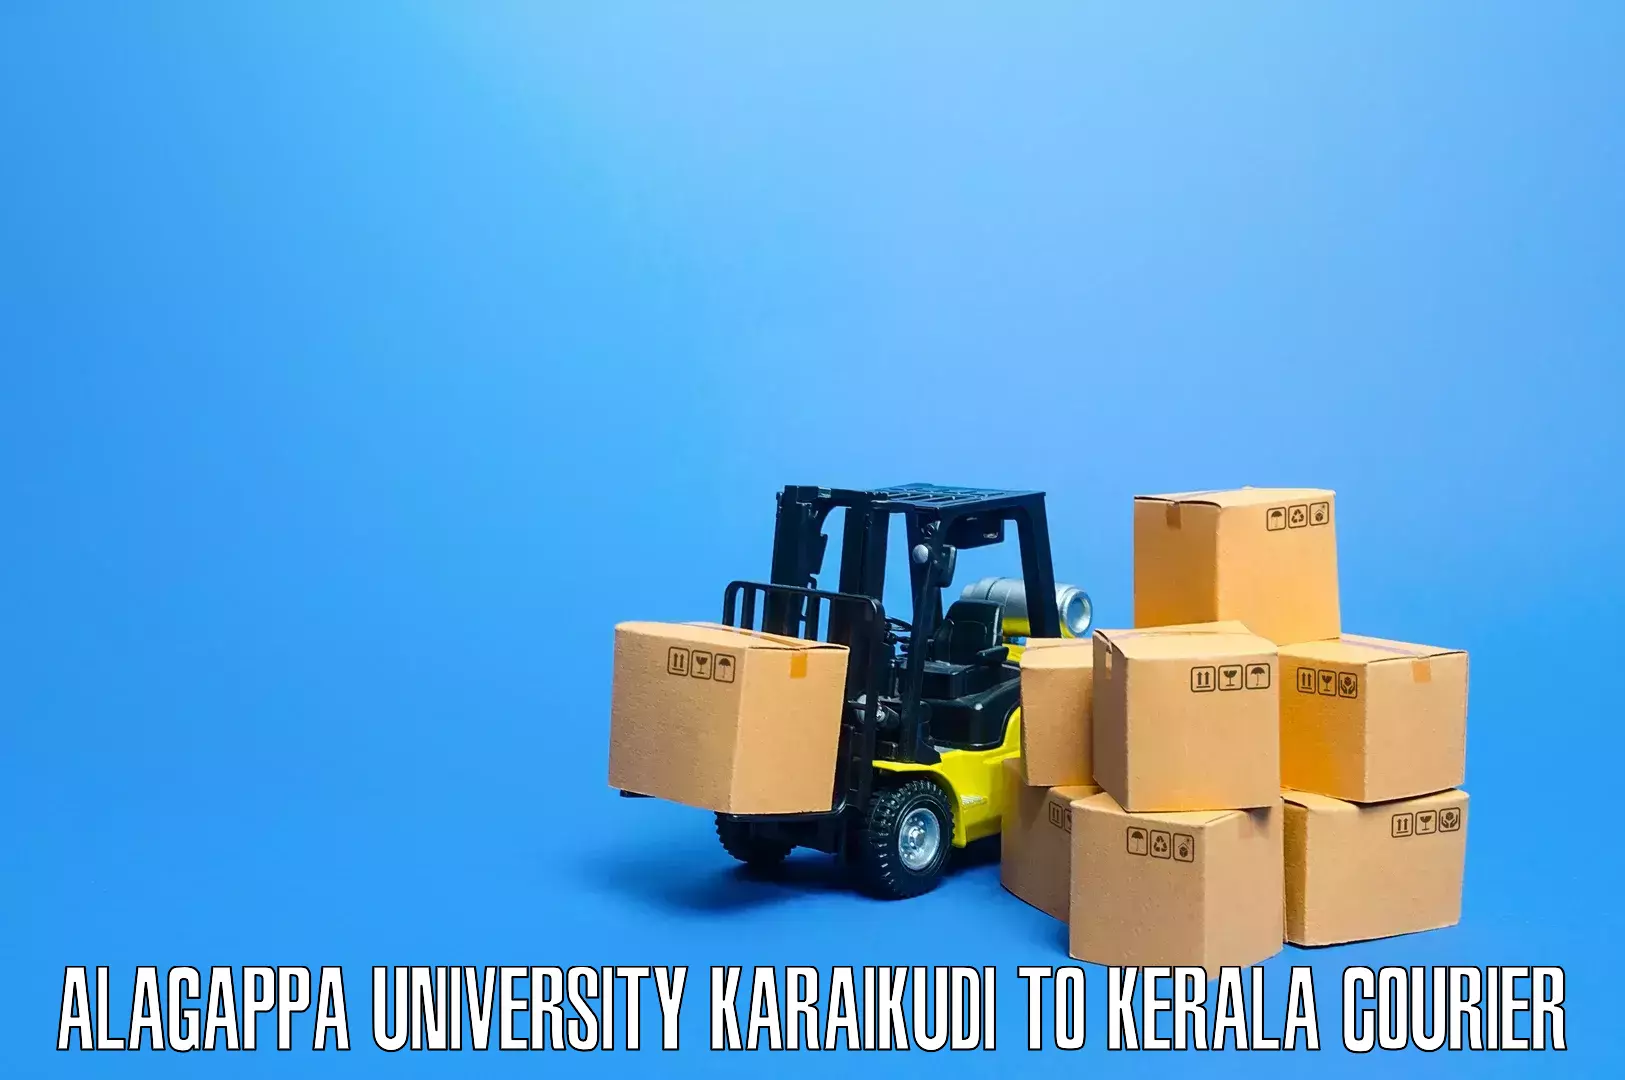 Furniture transport services Alagappa University Karaikudi to Kerala